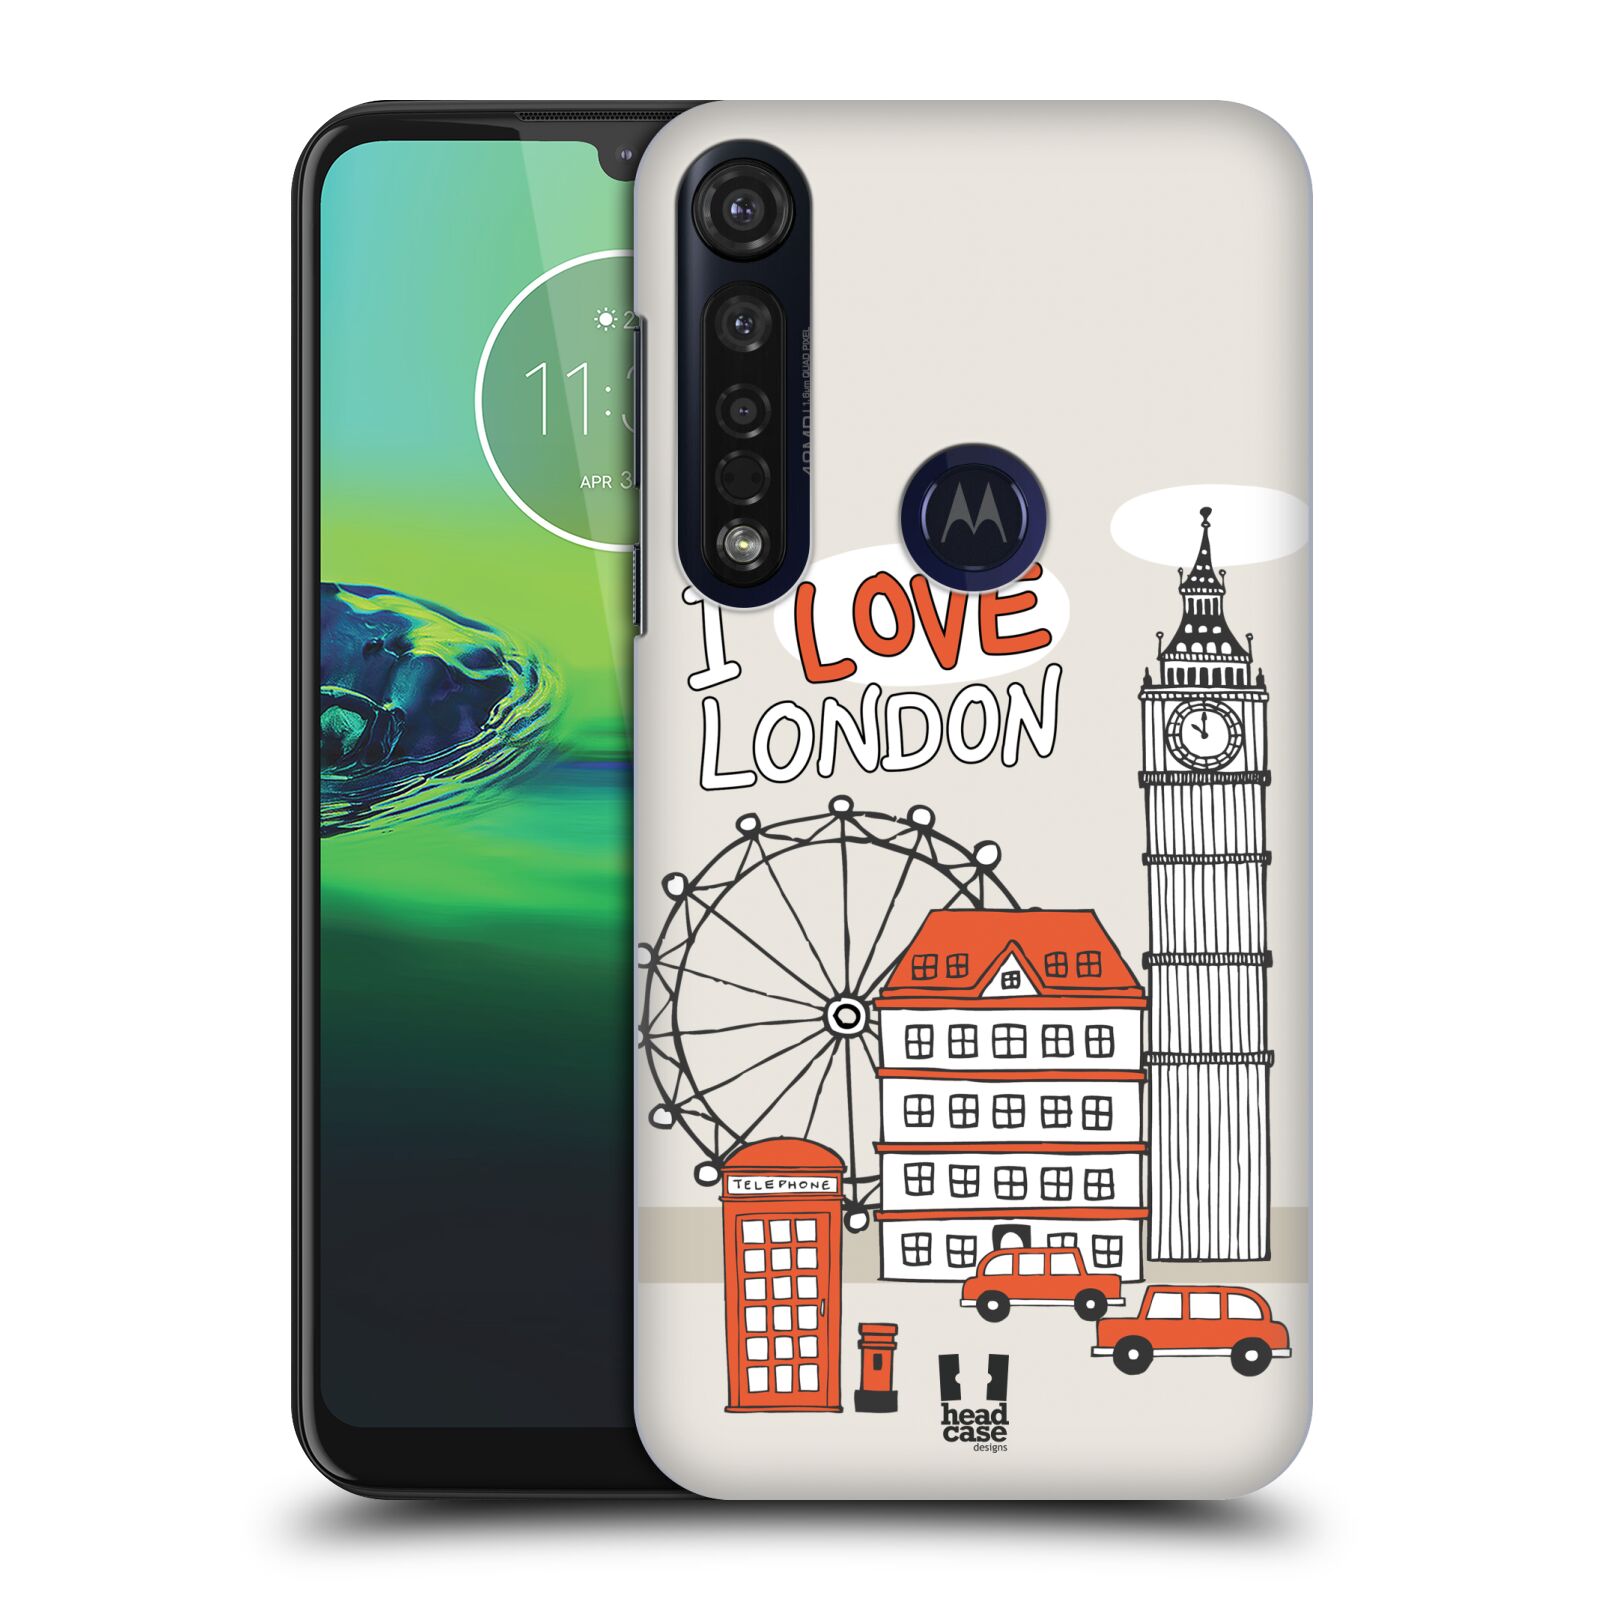 Pouzdro na mobil Motorola Moto G8 PLUS - HEAD CASE - vzor Kreslená městečka ČERVENÁ, Anglie, Londýn, I LOVE LONDON